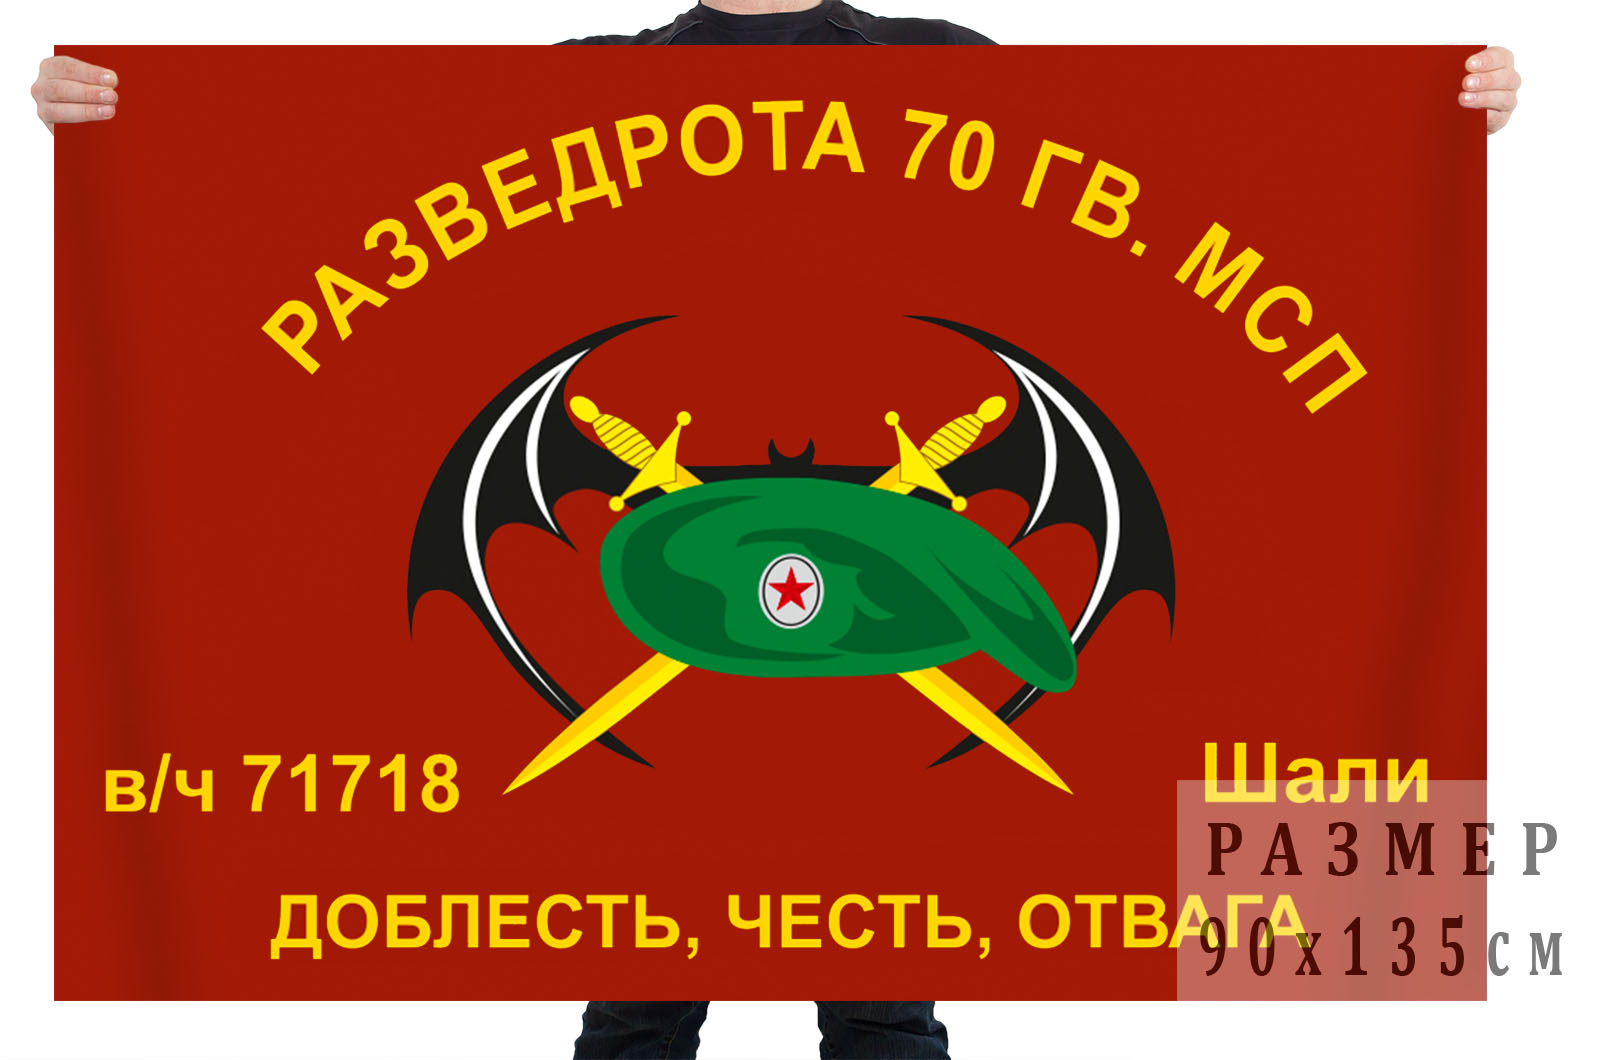 Флаг Разведроты 70 Гв. МСП (Шали)